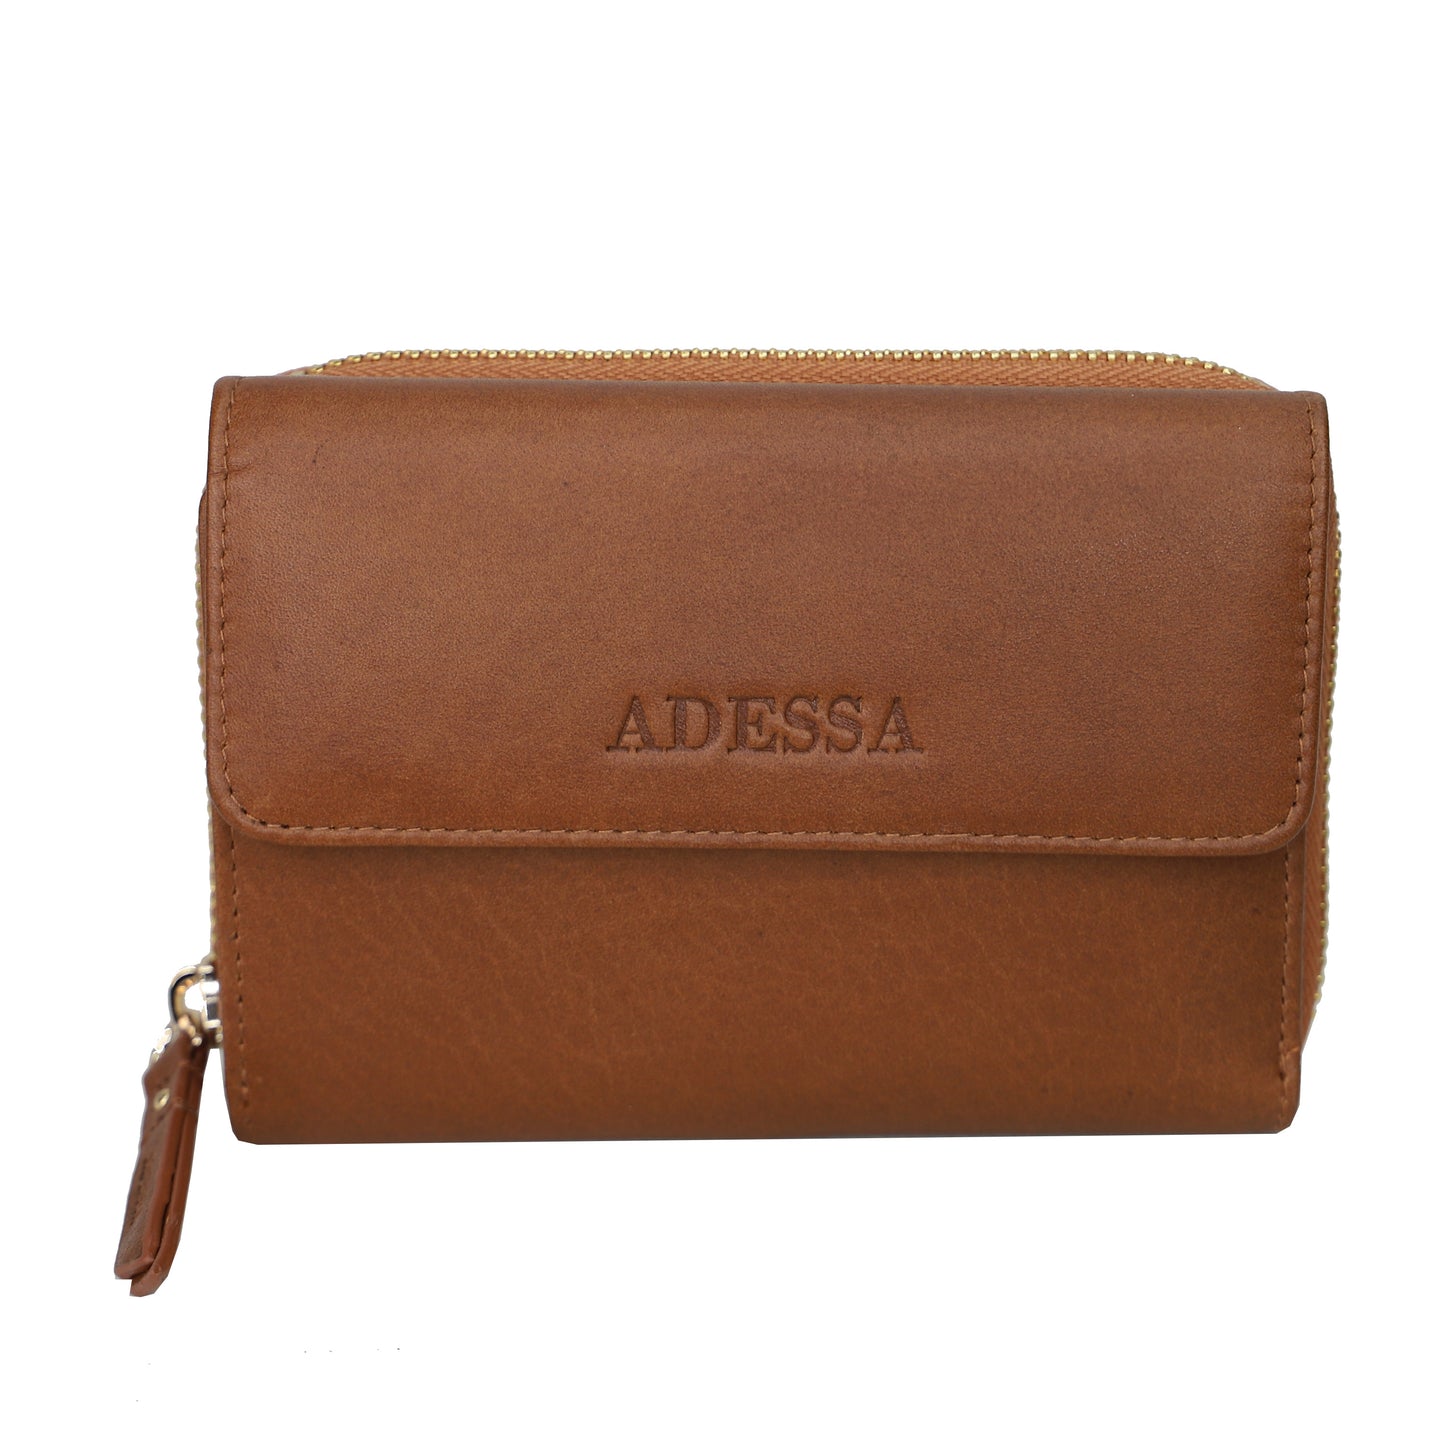 Adessa - Dijon Wallet